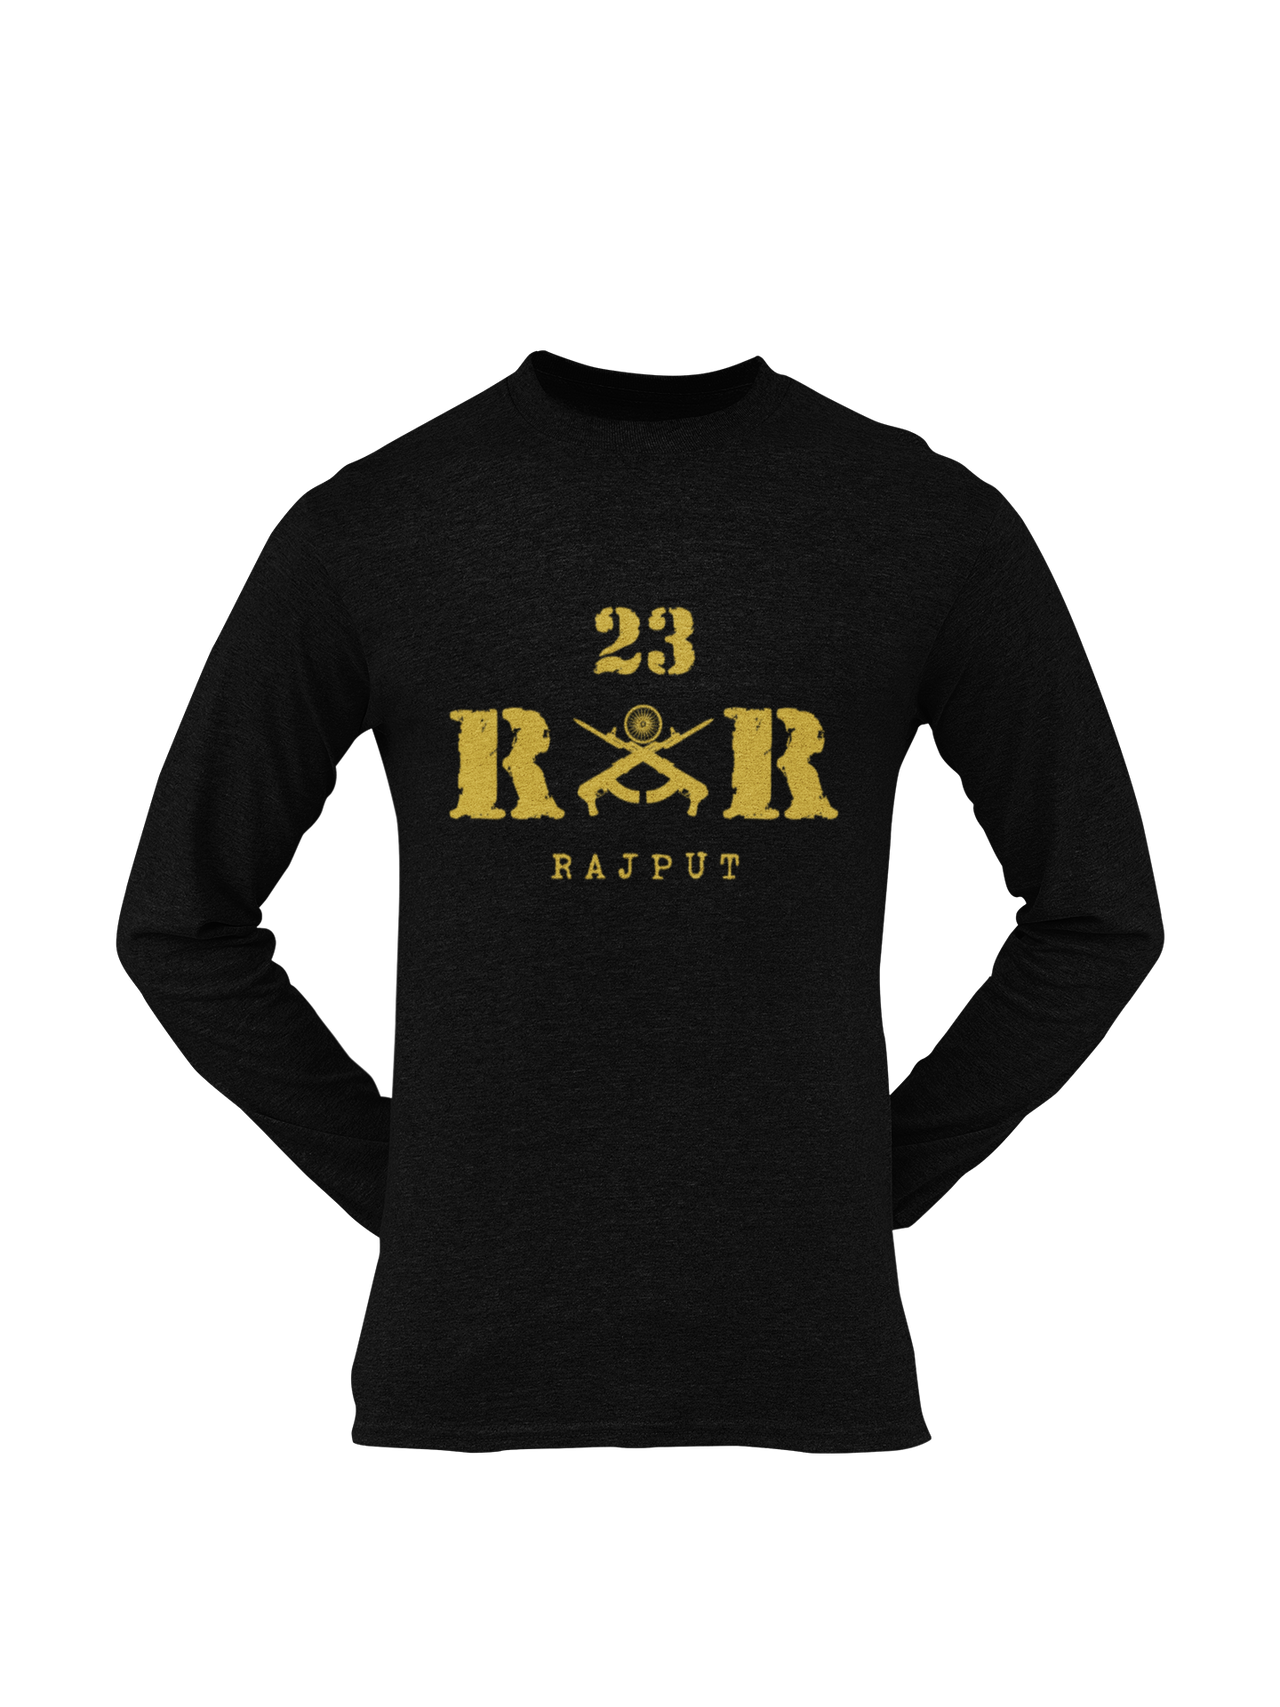 Men's Army Sleeve T-shirt | Rashtriya Rifles | 23 RR Rajput – Planet